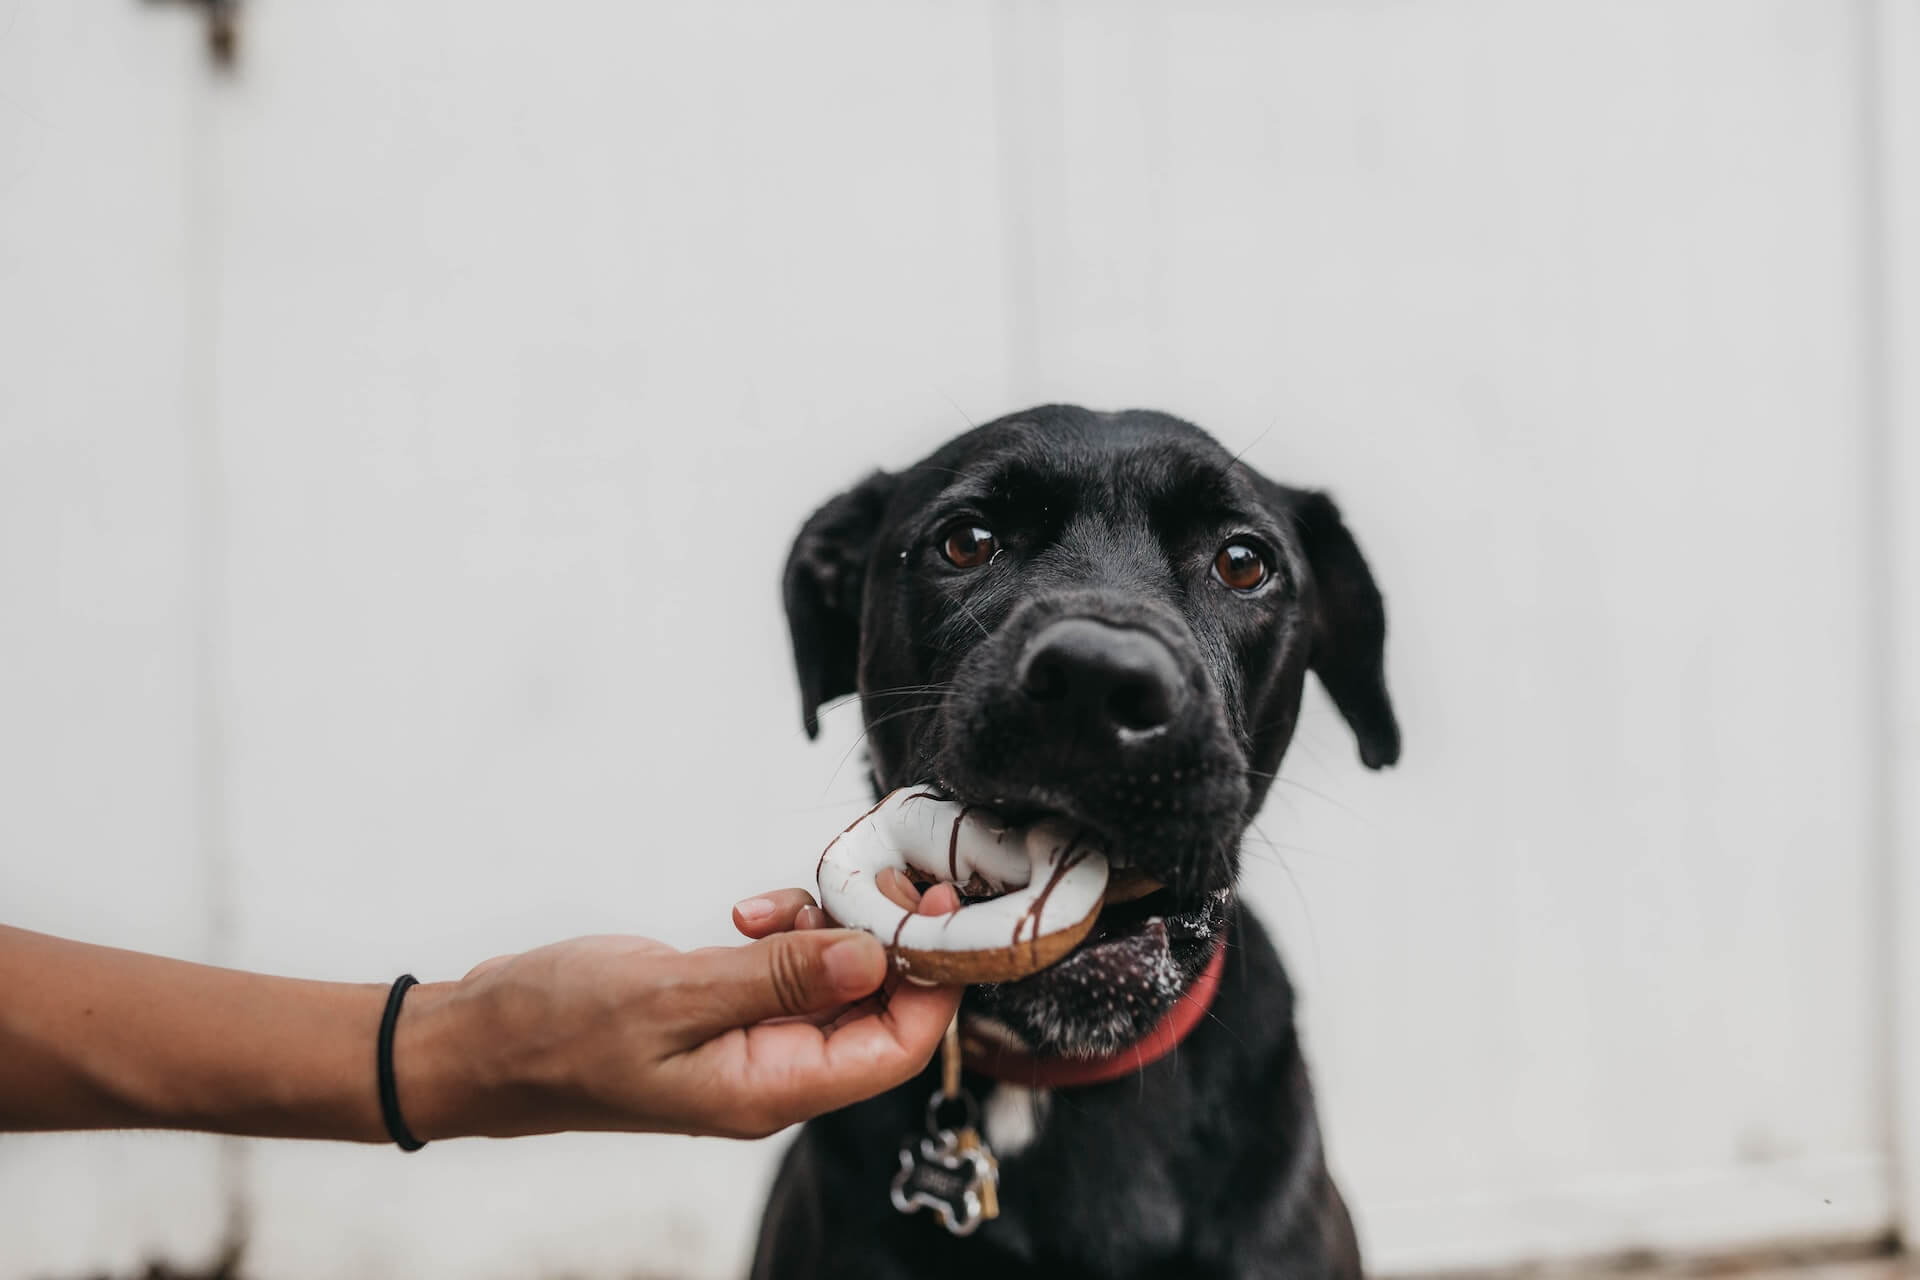 bras d'une personne donnant un donut à manger à un chien noir